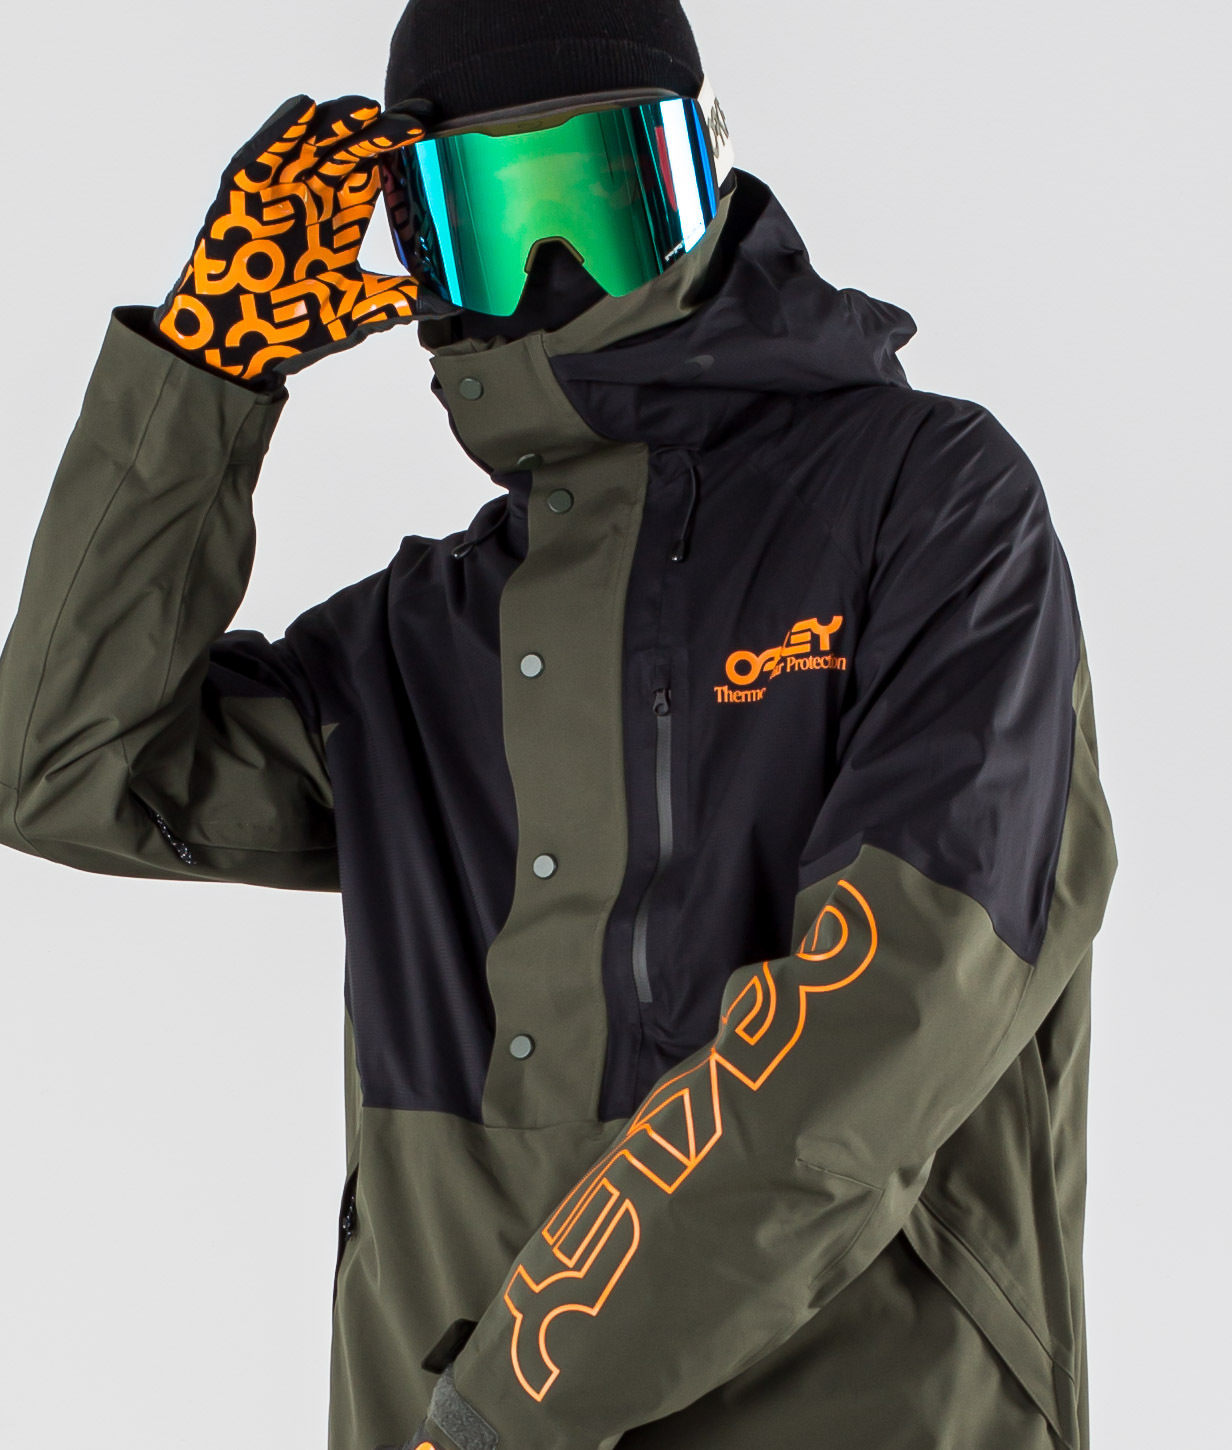 oakley jackets snowboard